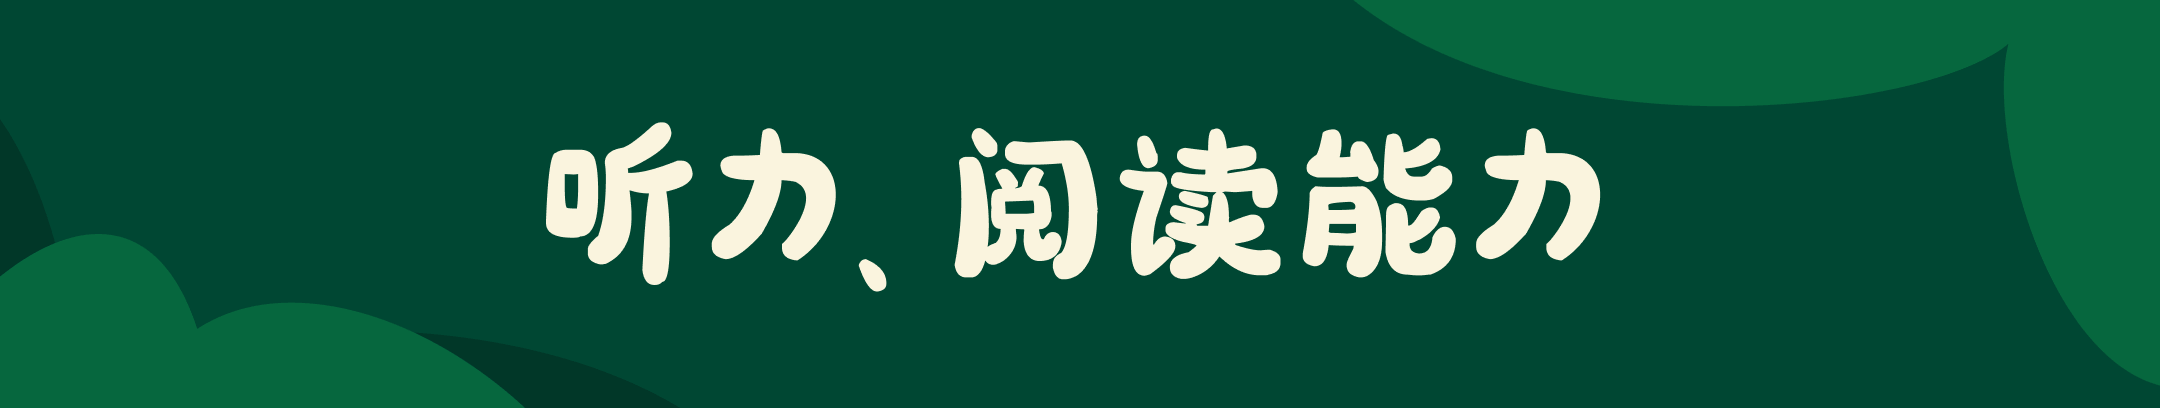 深绿色背景的宽幅 Banner，中间白色大字 “听力、阅读能力”。